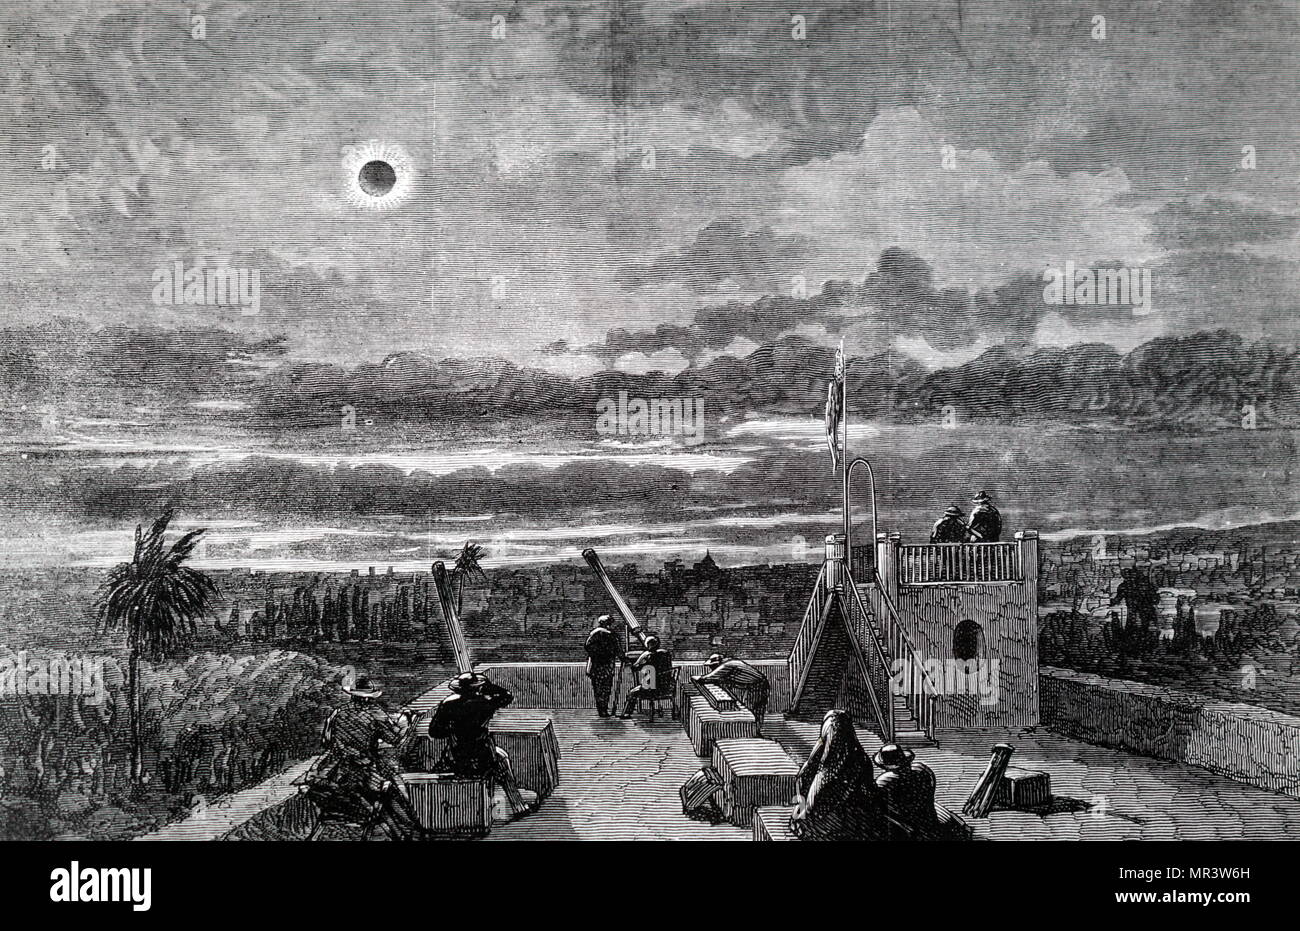 Kupferstich mit der Darstellung der Amerikanischen expedition Beobachtung der totalen Sonnenfinsternis von 1870, von Xeres, San Antonio. Vom 19. Jahrhundert Stockfoto